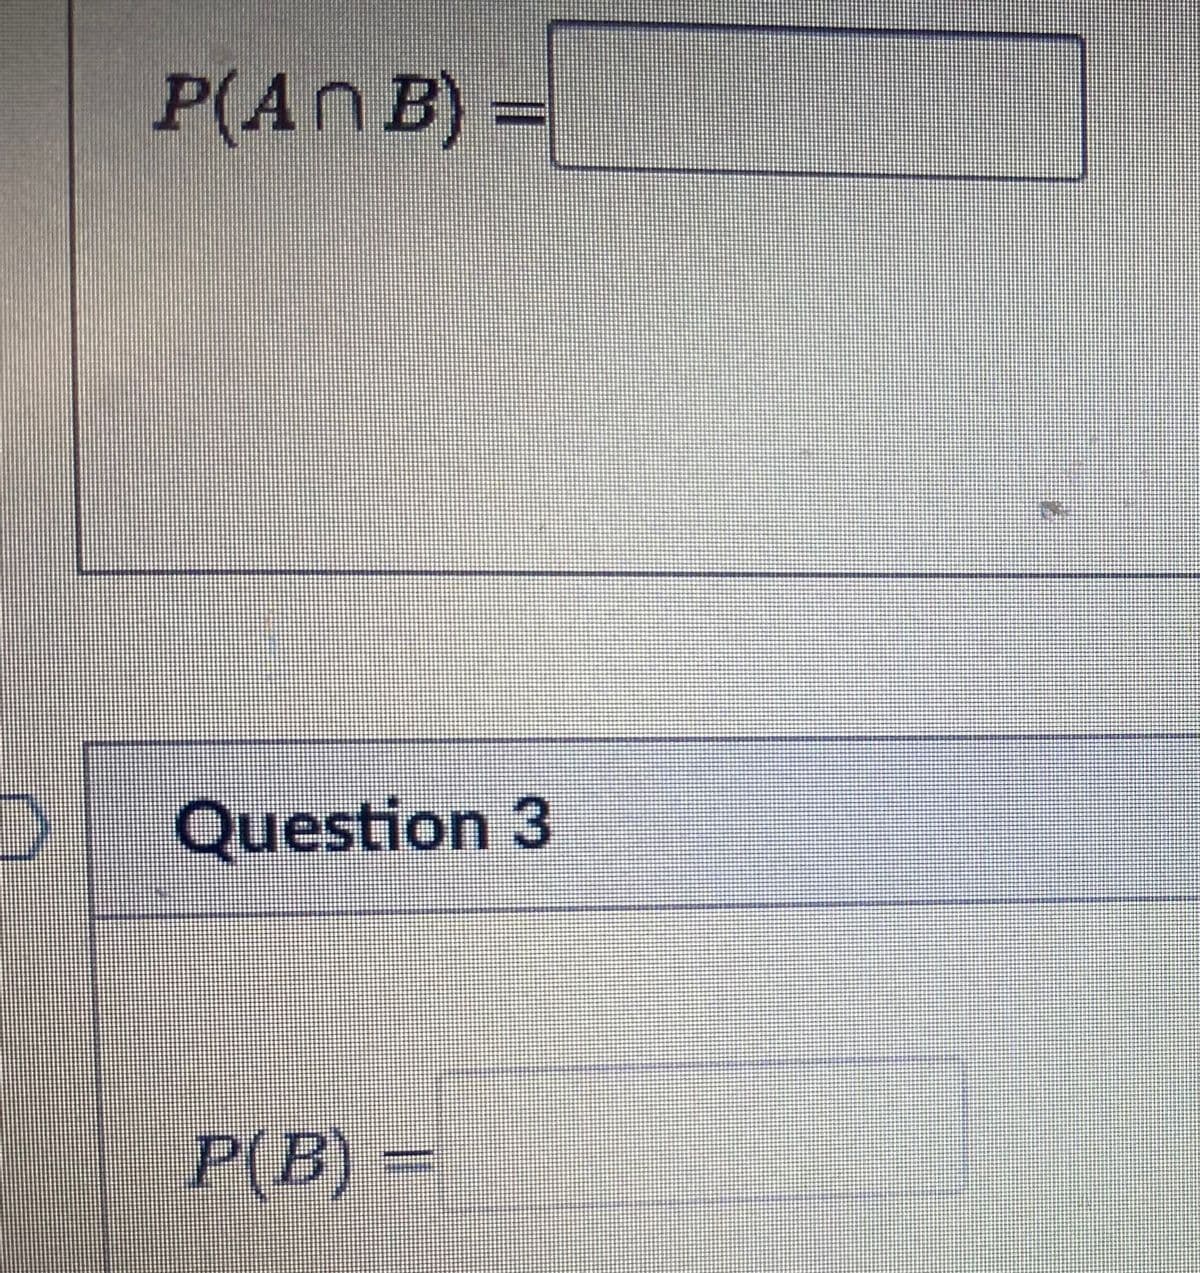 D
P(An B) =
Question 3
P(B) =